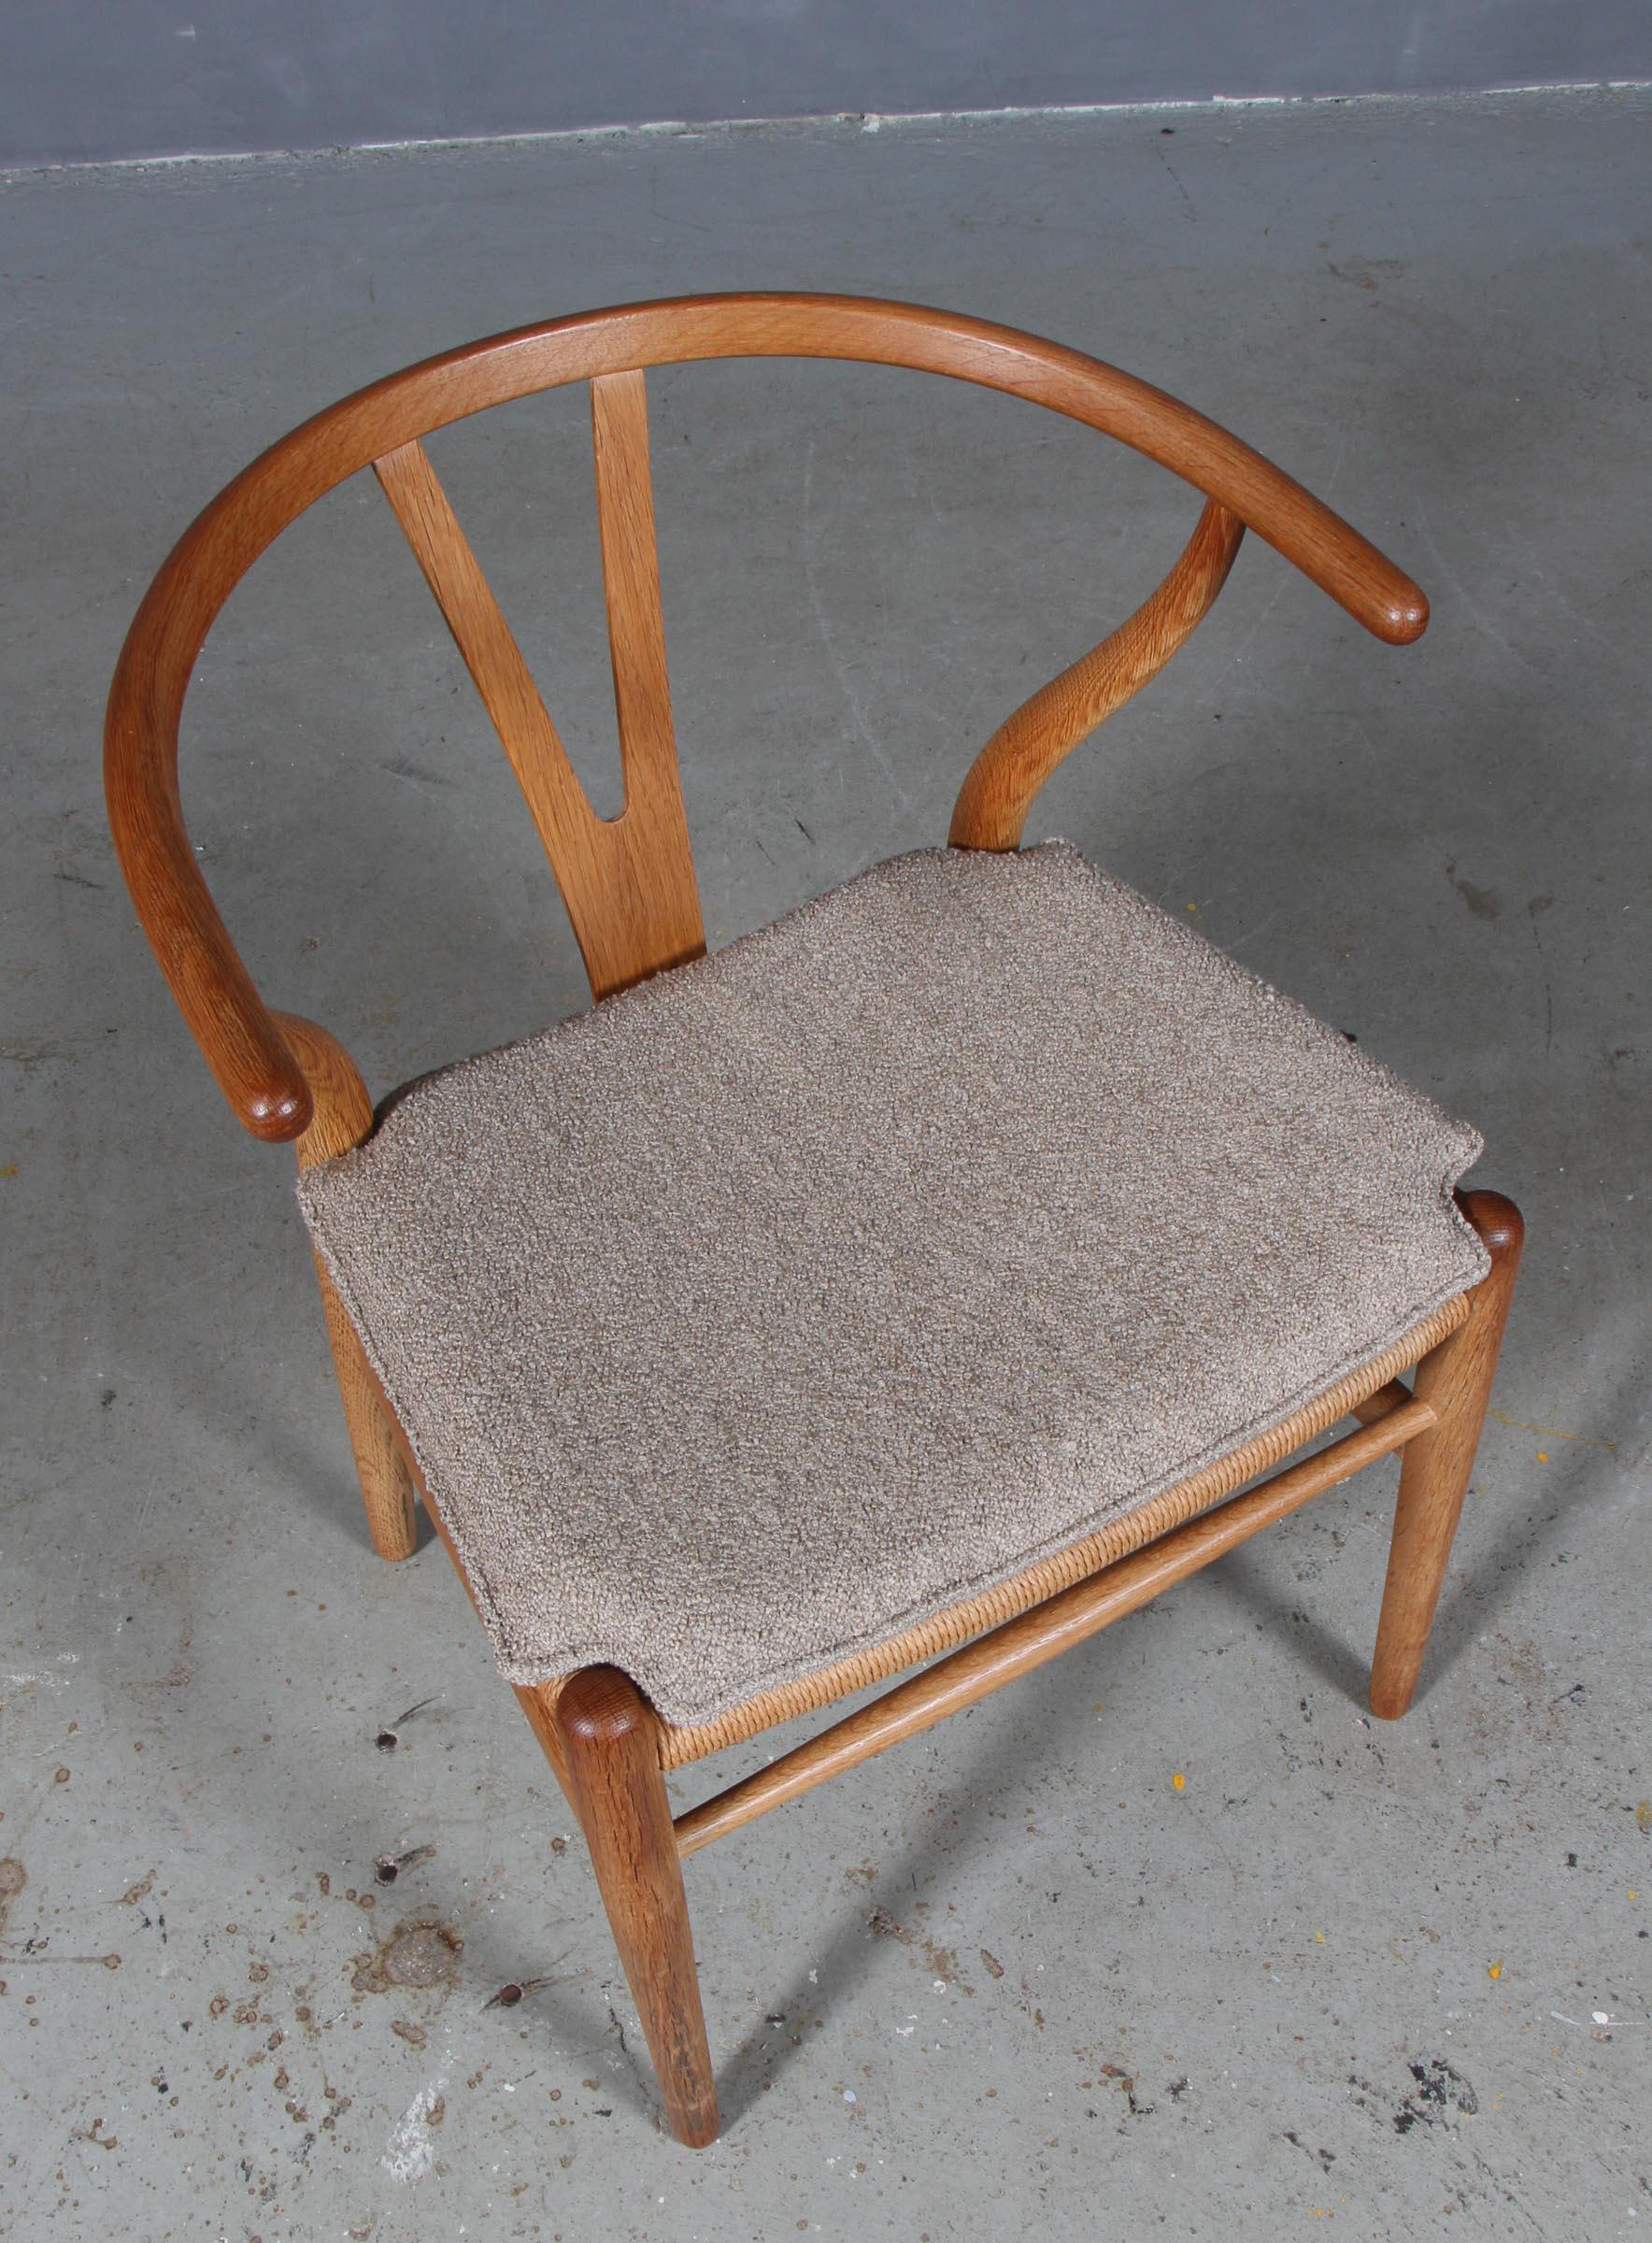 Coussins Hans J. Wegner pour chaise à boudin modèle CH24.

Fabriqué en cuir aniline pur cognac et en mousse de bonne qualité.

Seulement le coussin, pas la chaise.